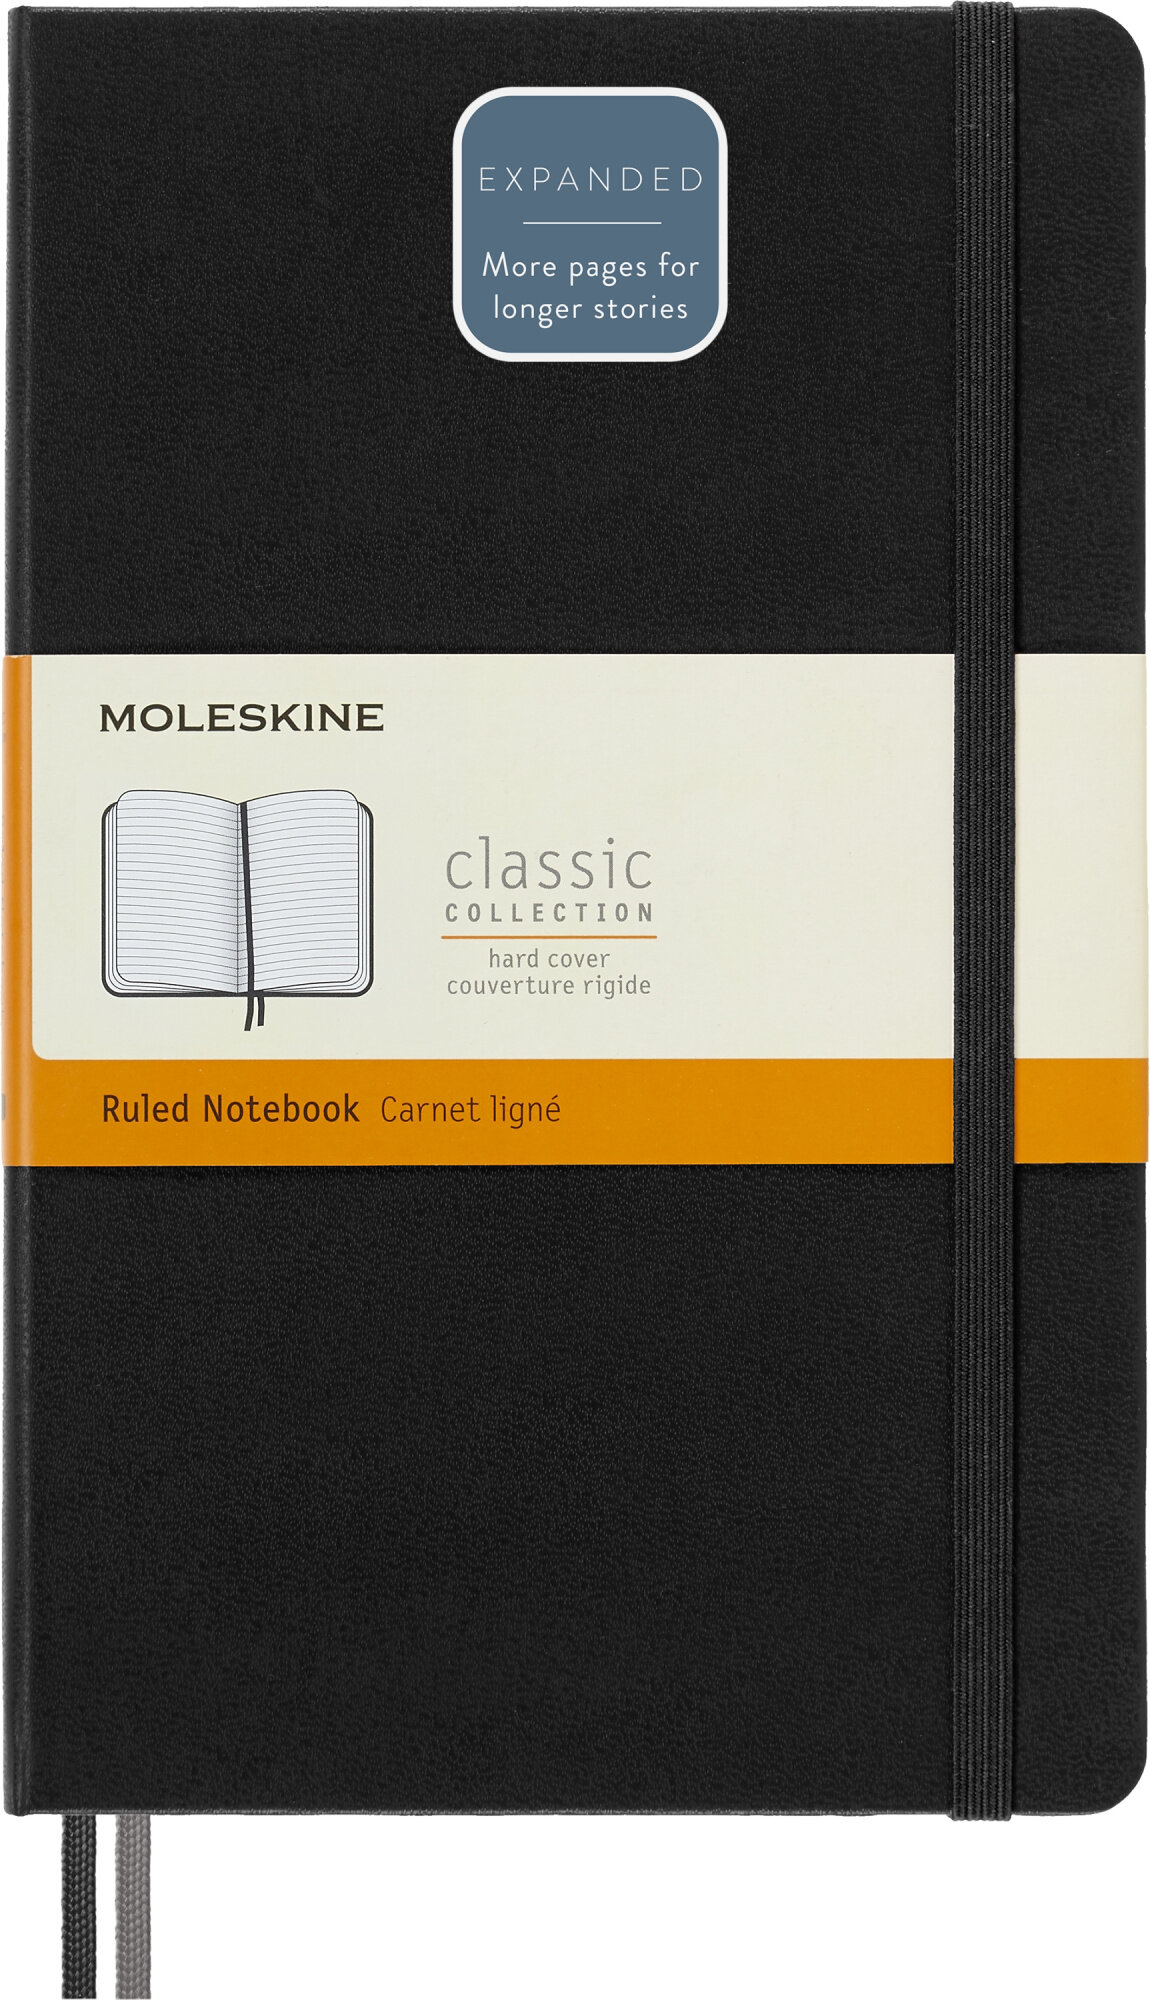 Блокнот Moleskine CLASSIC EXPENDED Large 130х210мм 400стр. линейка твердая обложка черный 6 шт./кор. - фото №14